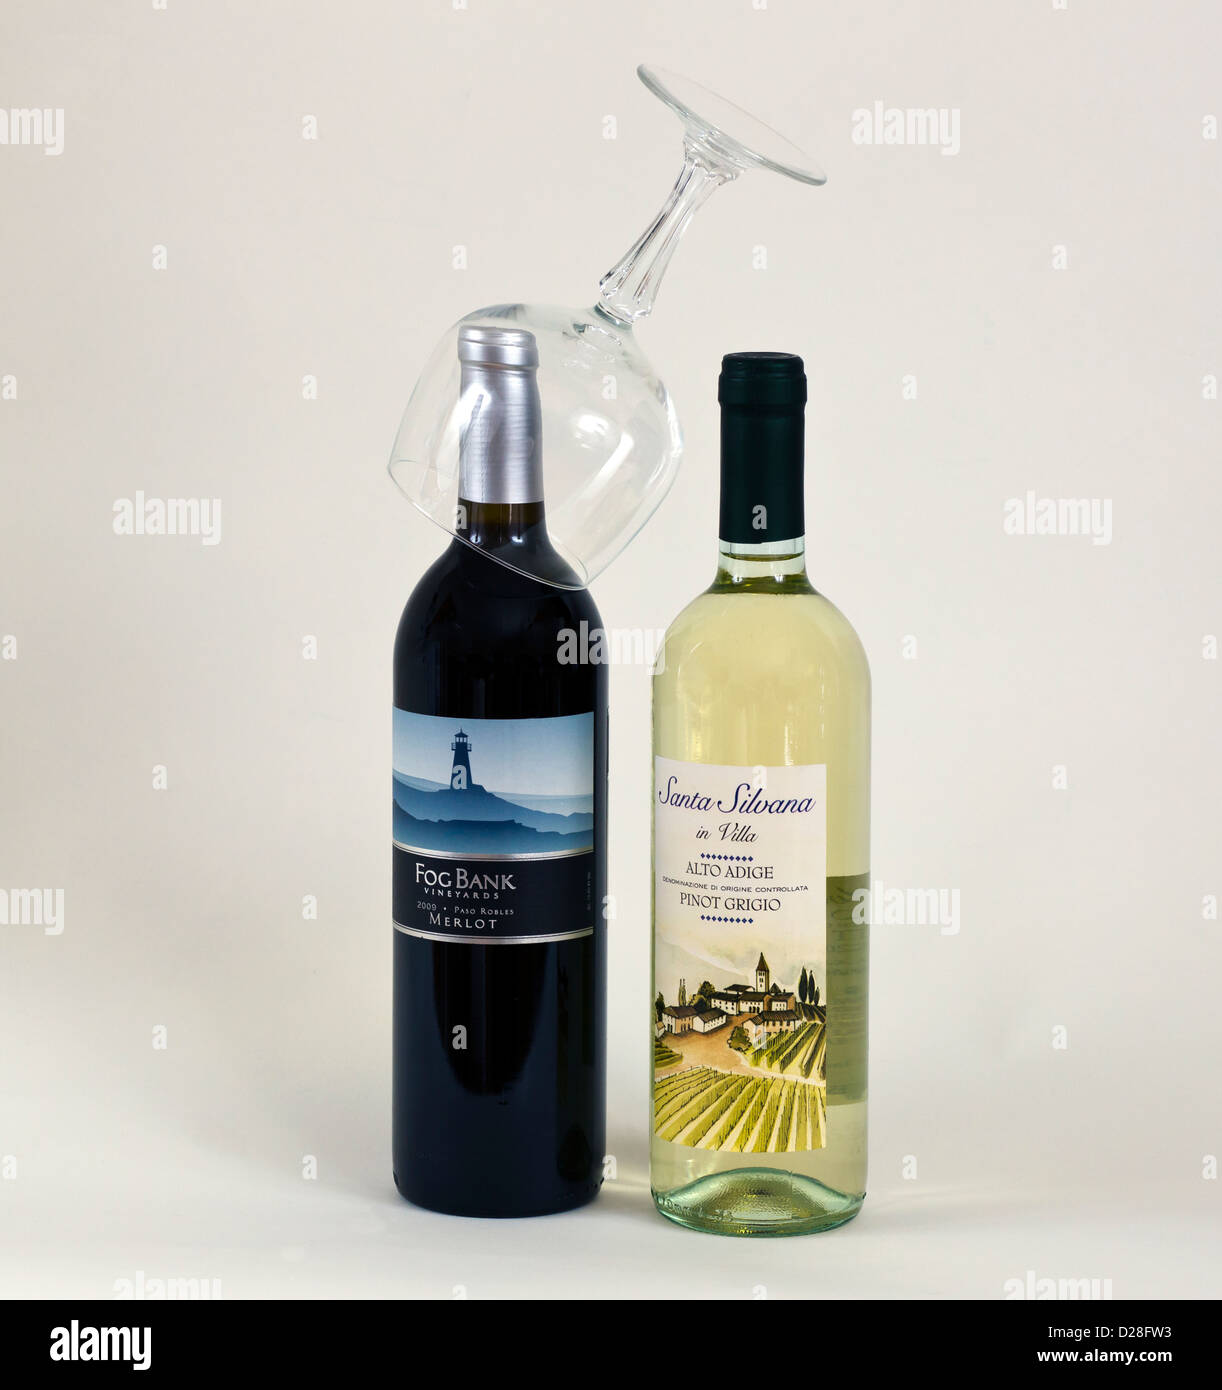 Zwei Flaschen Wein, eine rote und eine weiße mit einem Glas auf der Oberseite eine Flasche. Stockfoto